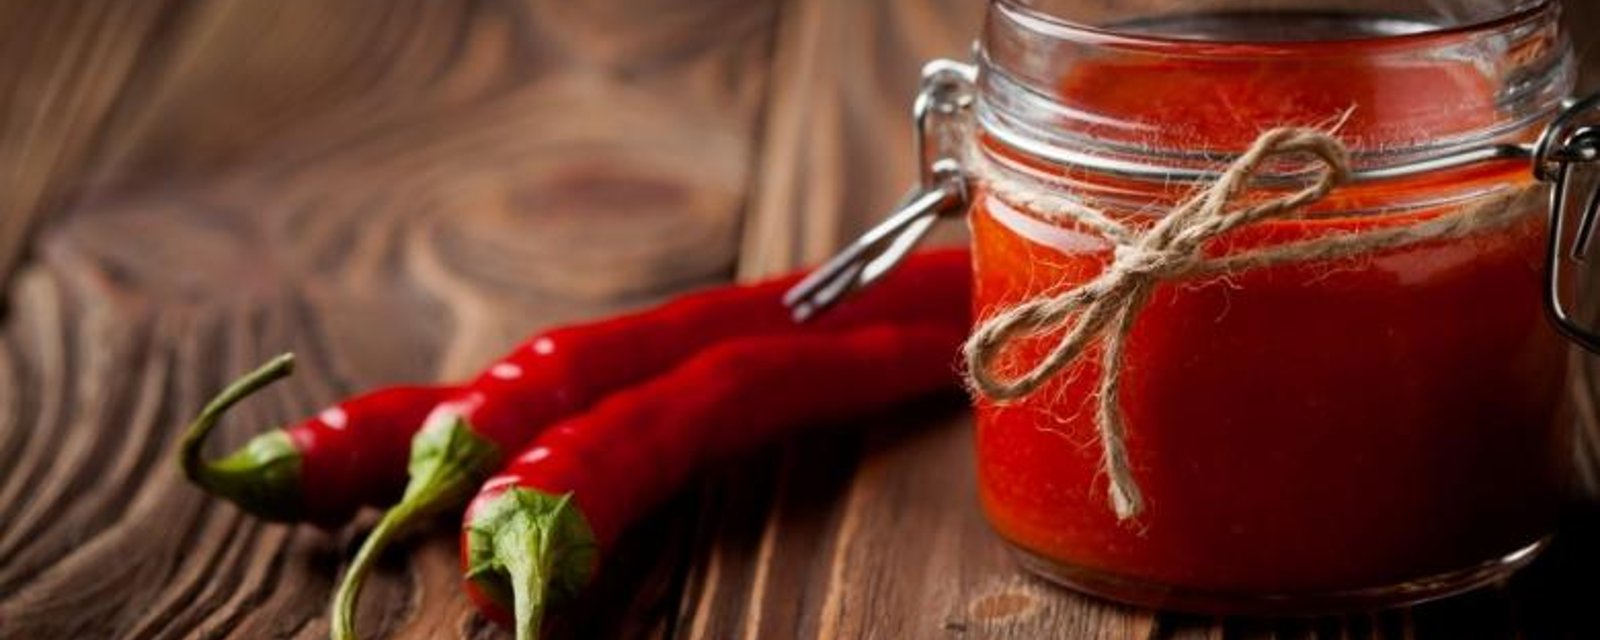 Réaliser votre propre sauce piquante style Red Hot à la maison